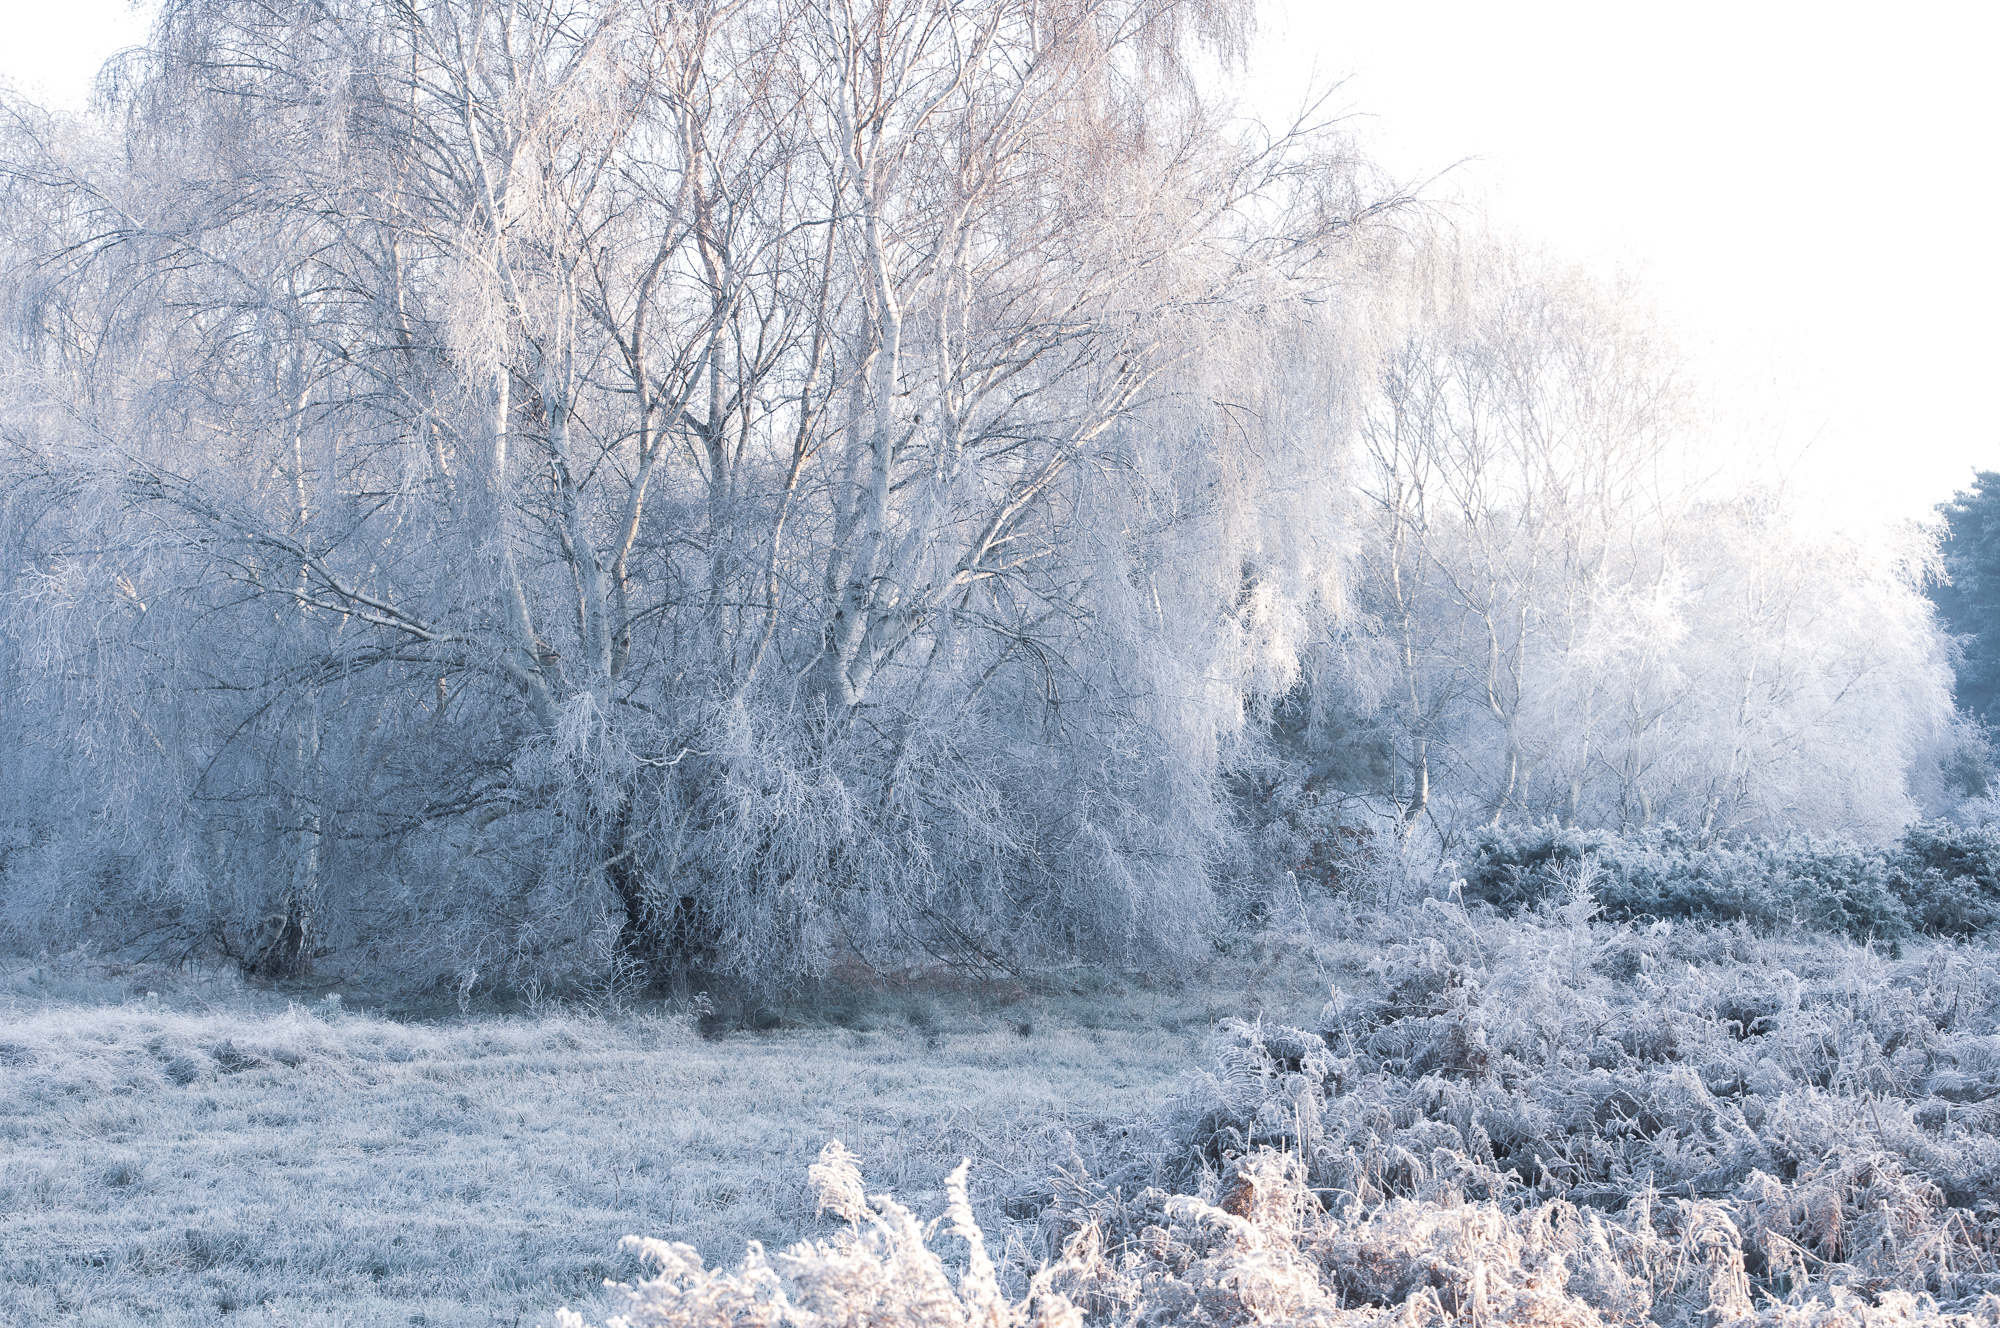 Winter's Tale, Blaxhall